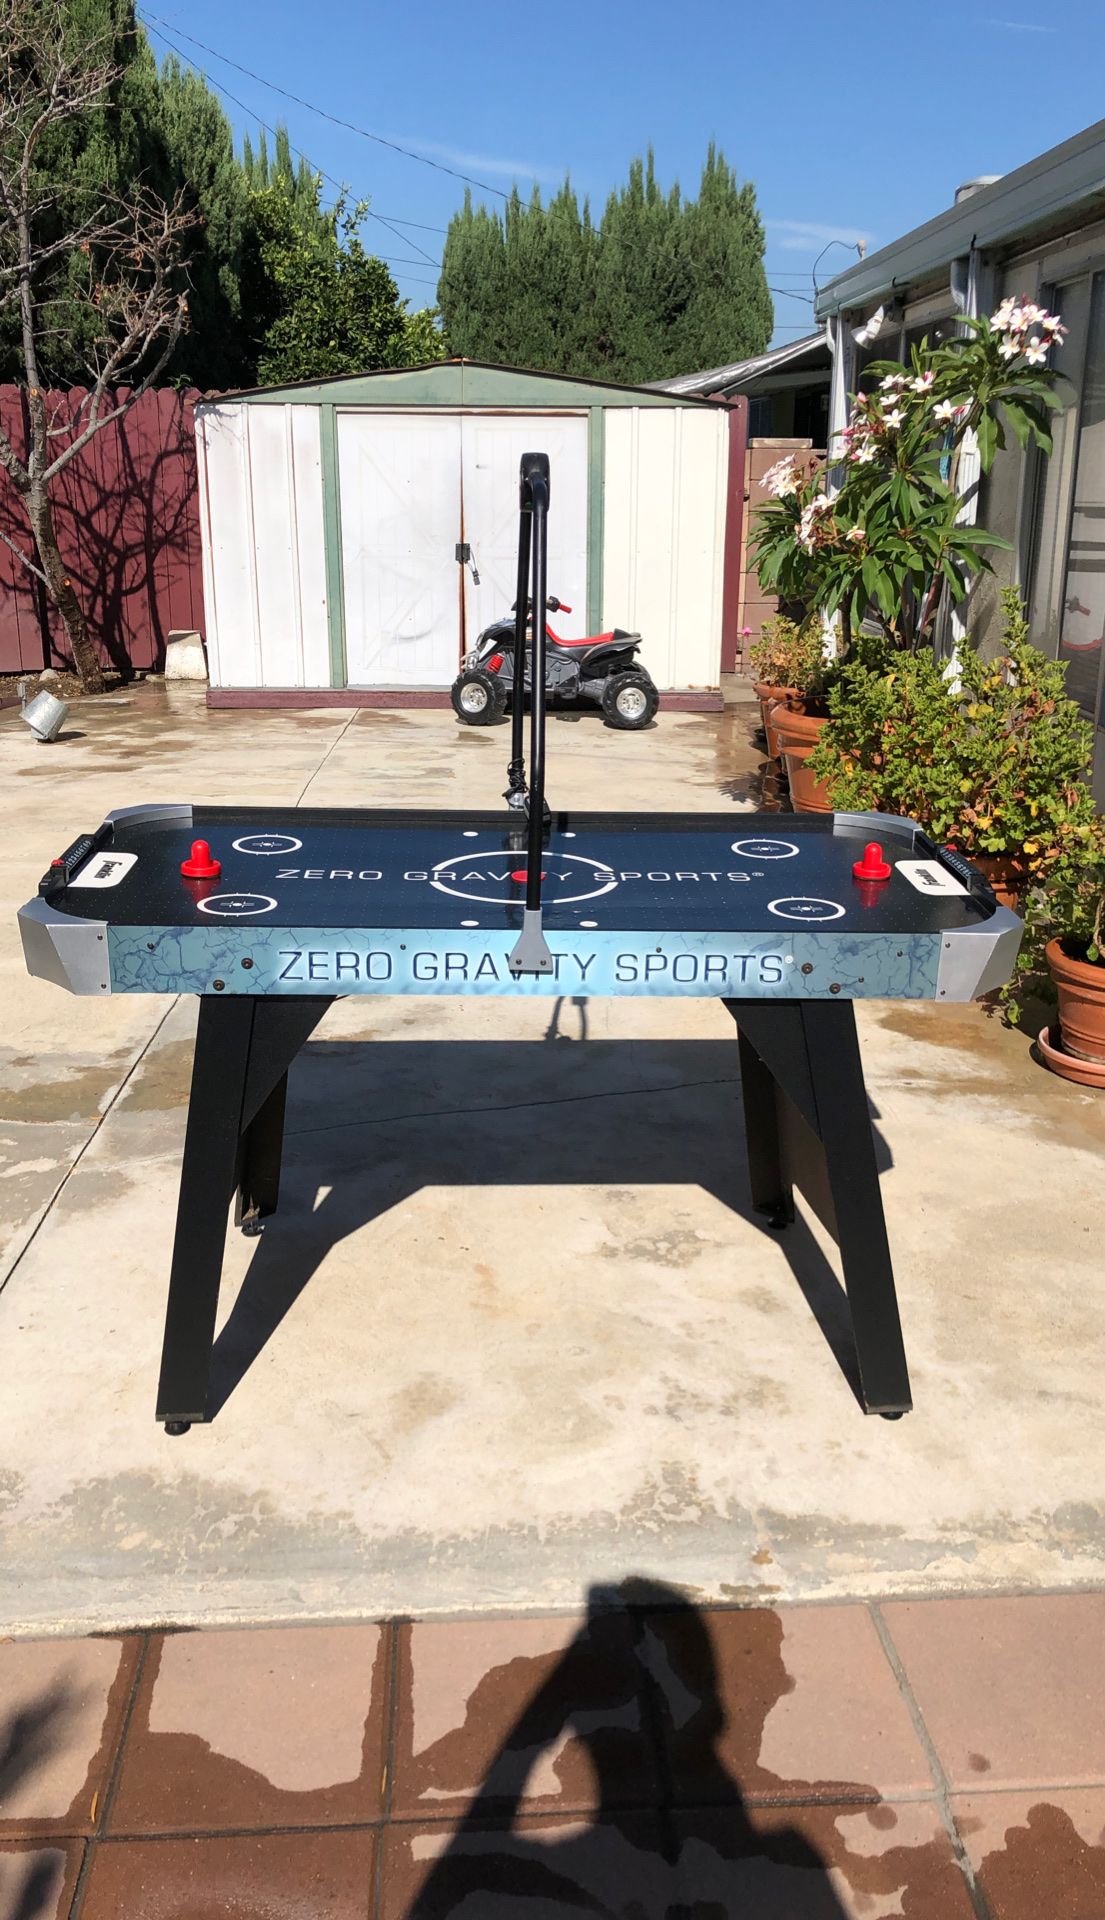 Franklin air hockey table